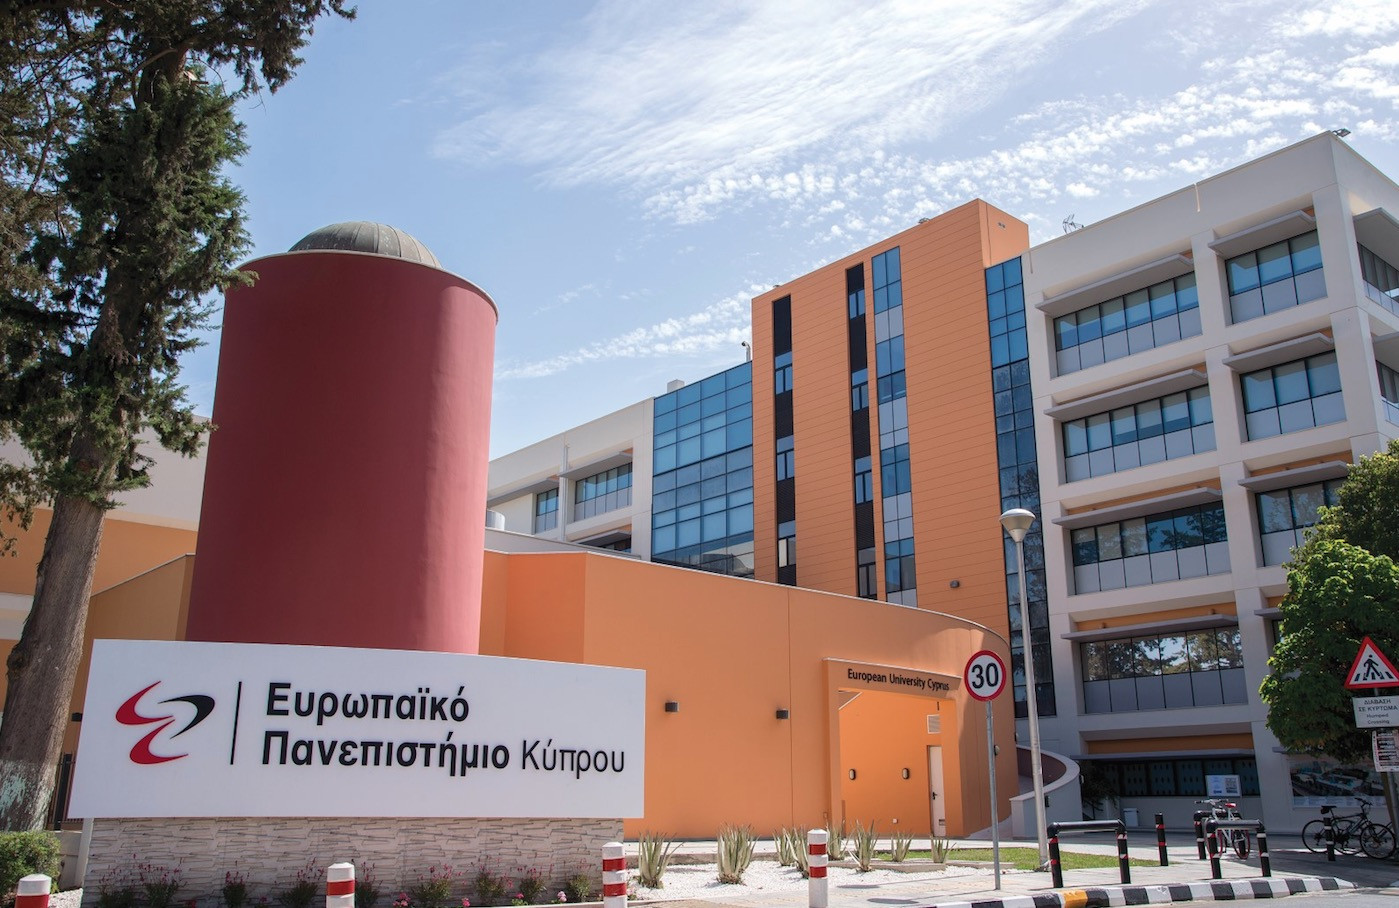 Ευρωπαϊκό Πανεπιστήμιο Κύπρου: Ποιότητα, καινοτομία και ανάπτυξη